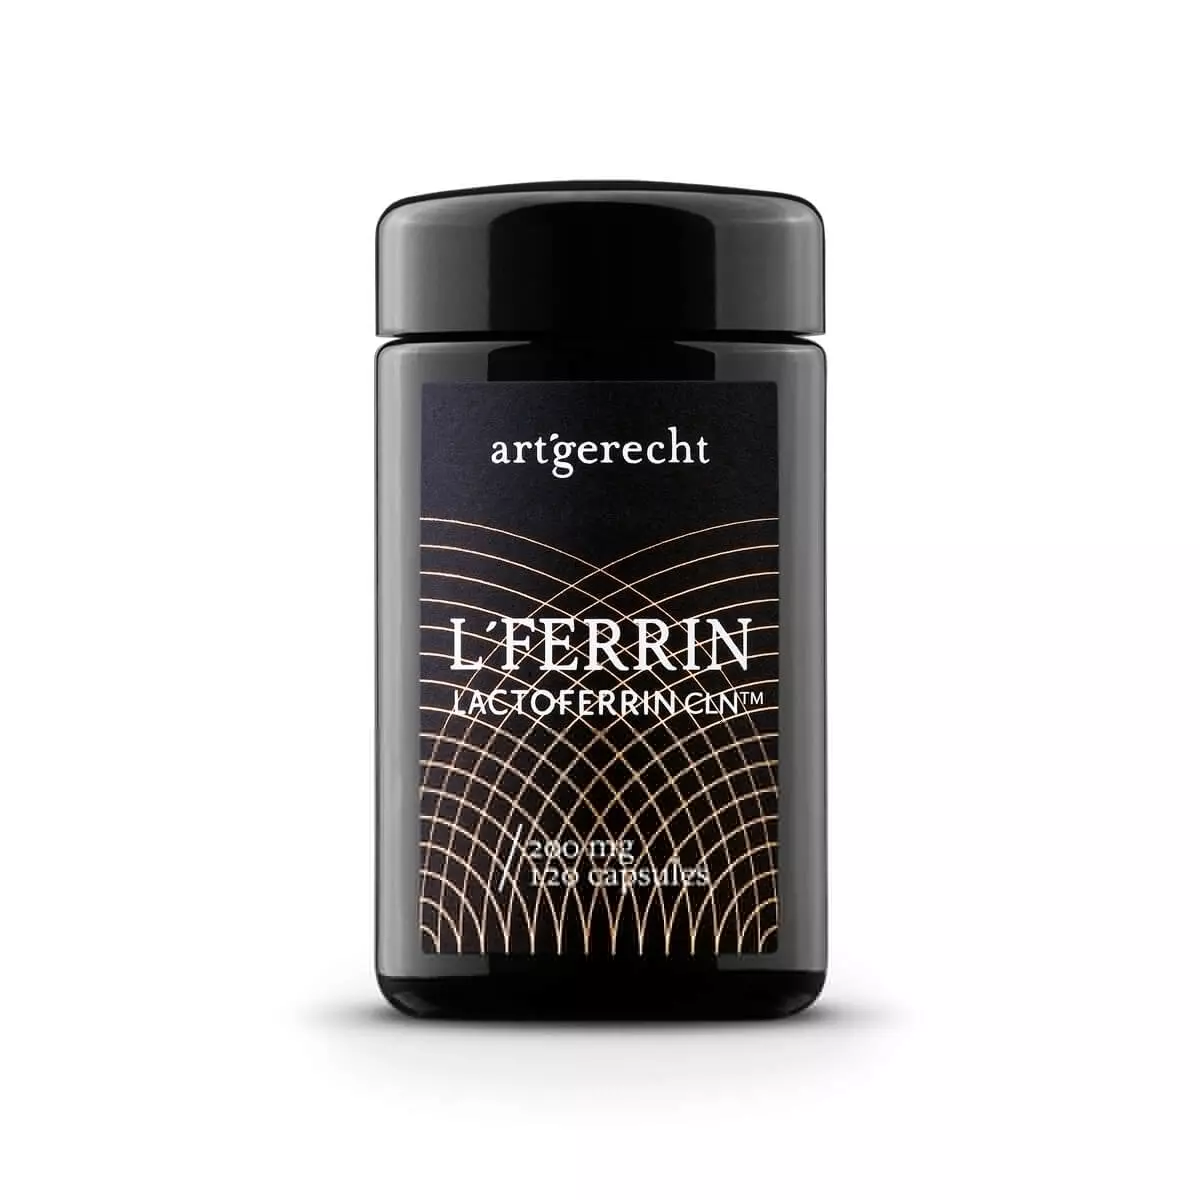 L'FERRIN - Lactoferrin CLN (Clean)